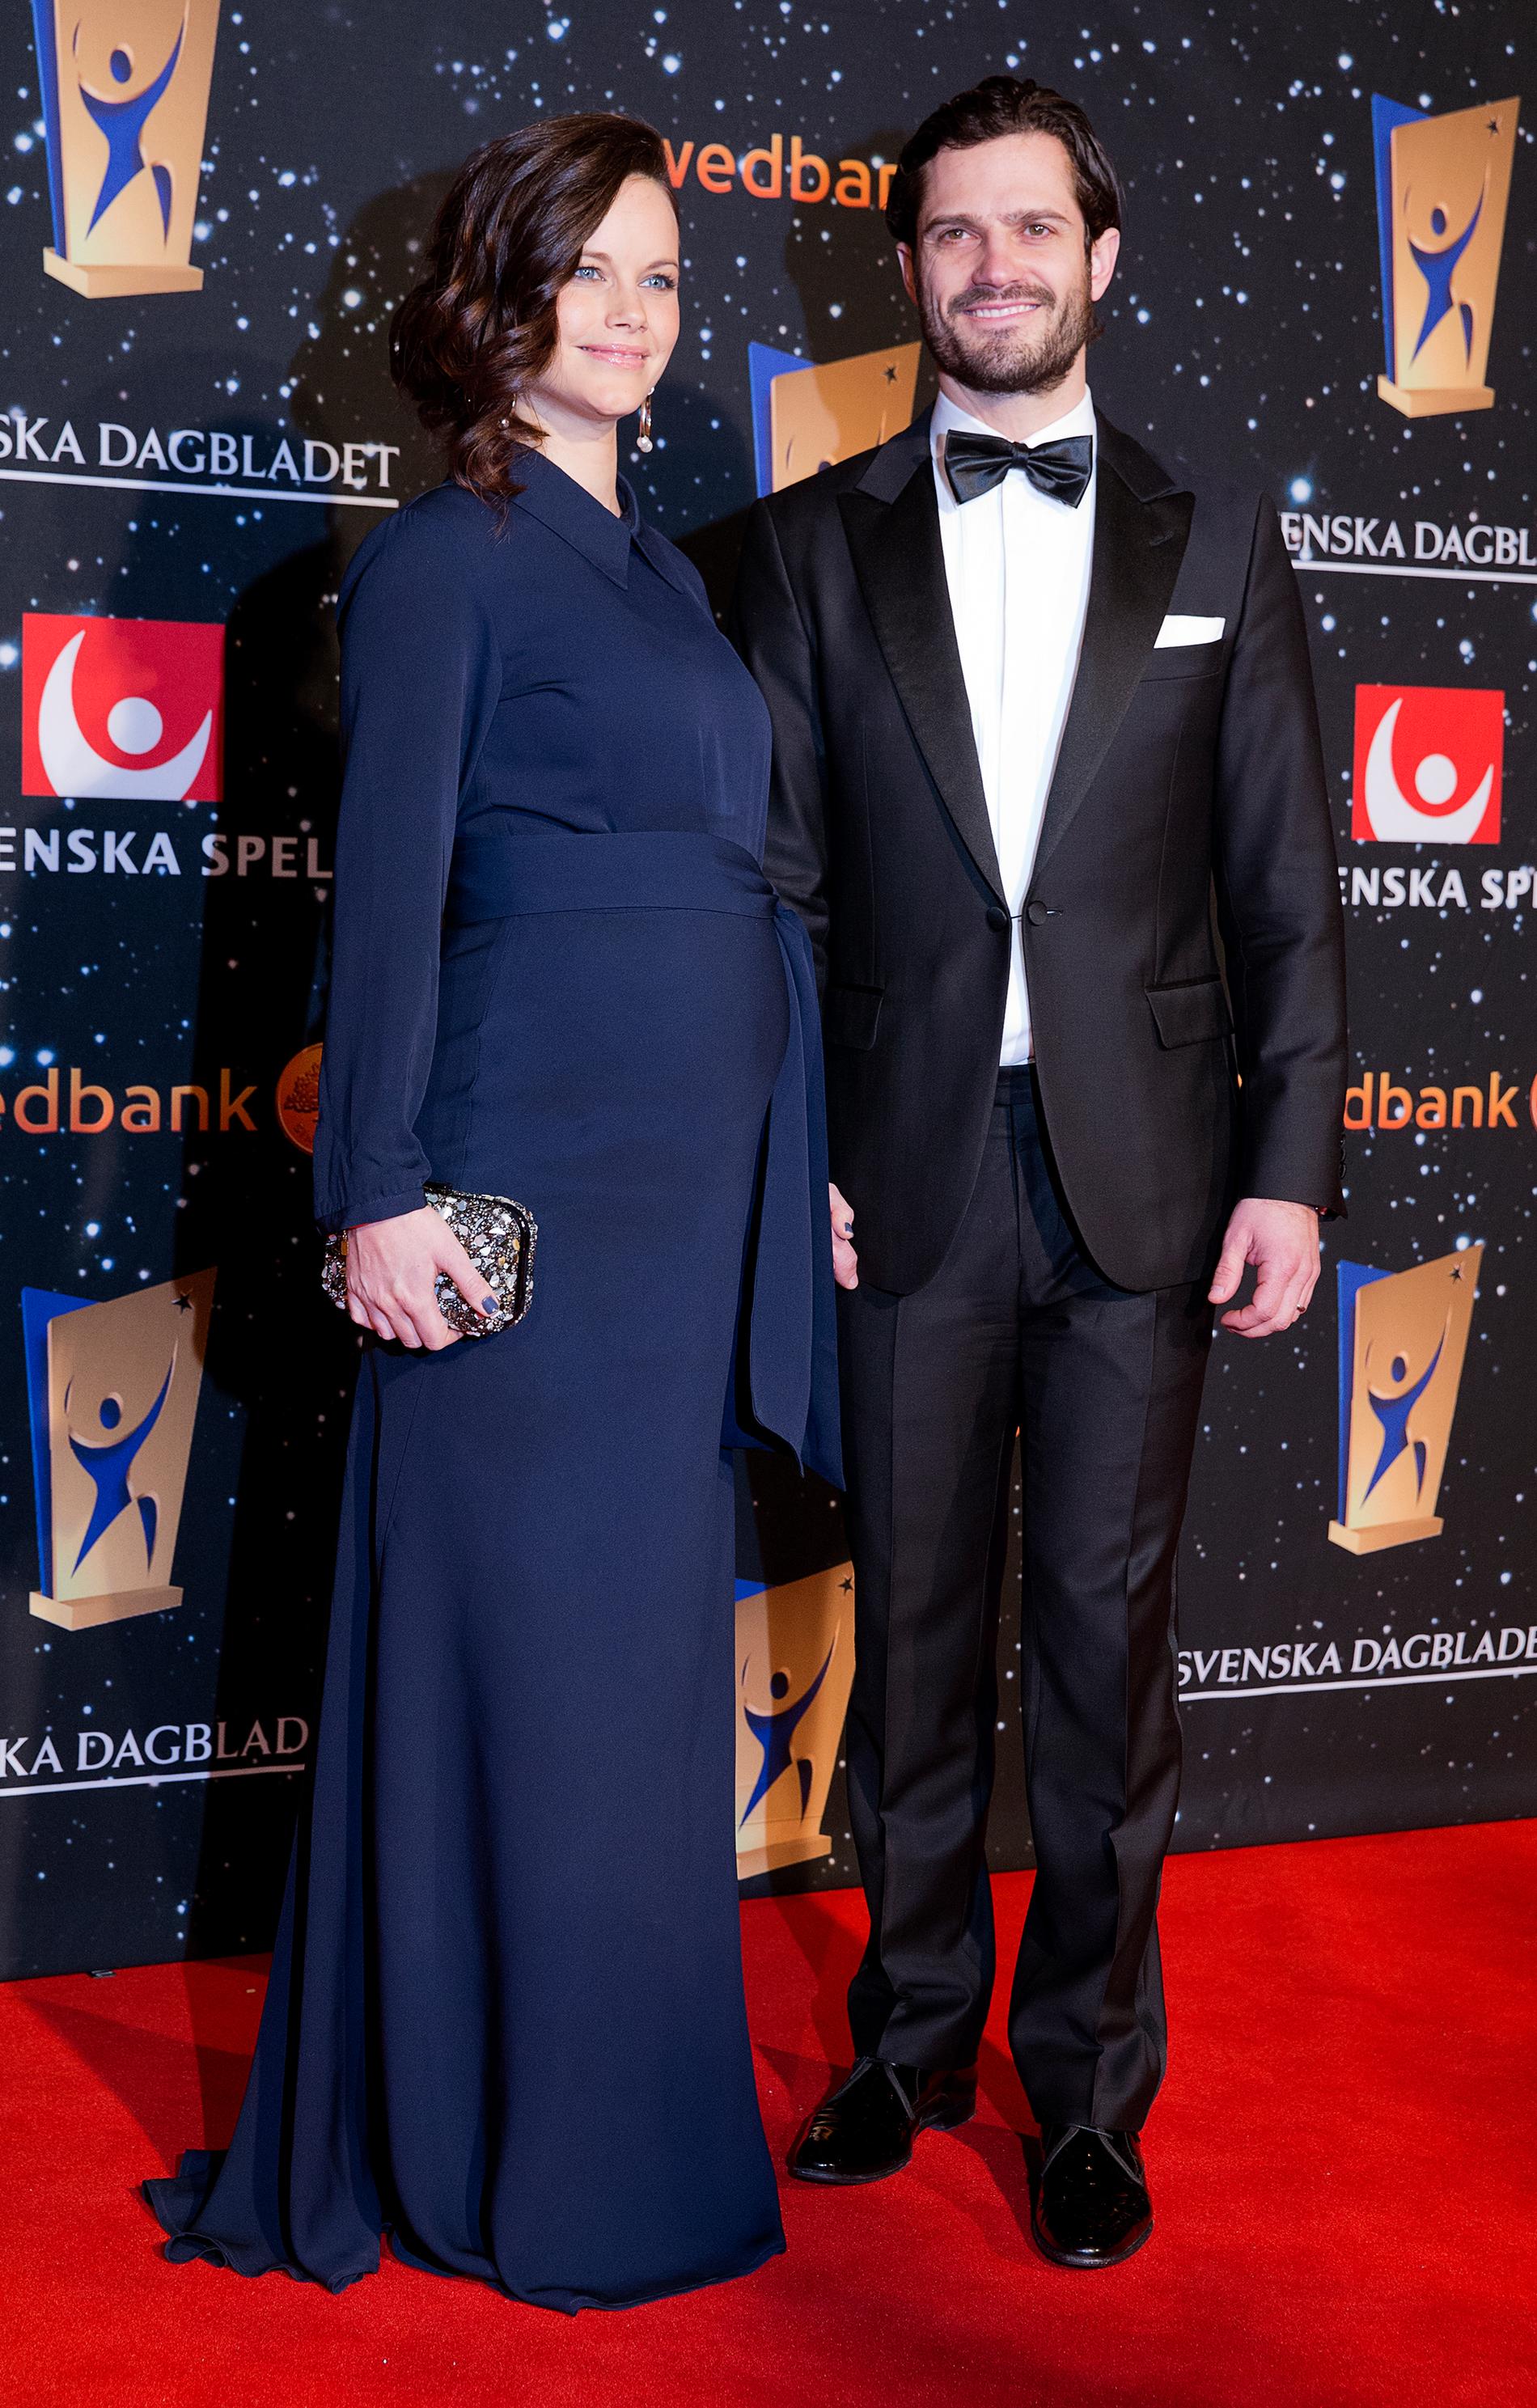 Prinssessan Sofia och prins Carl Philip.